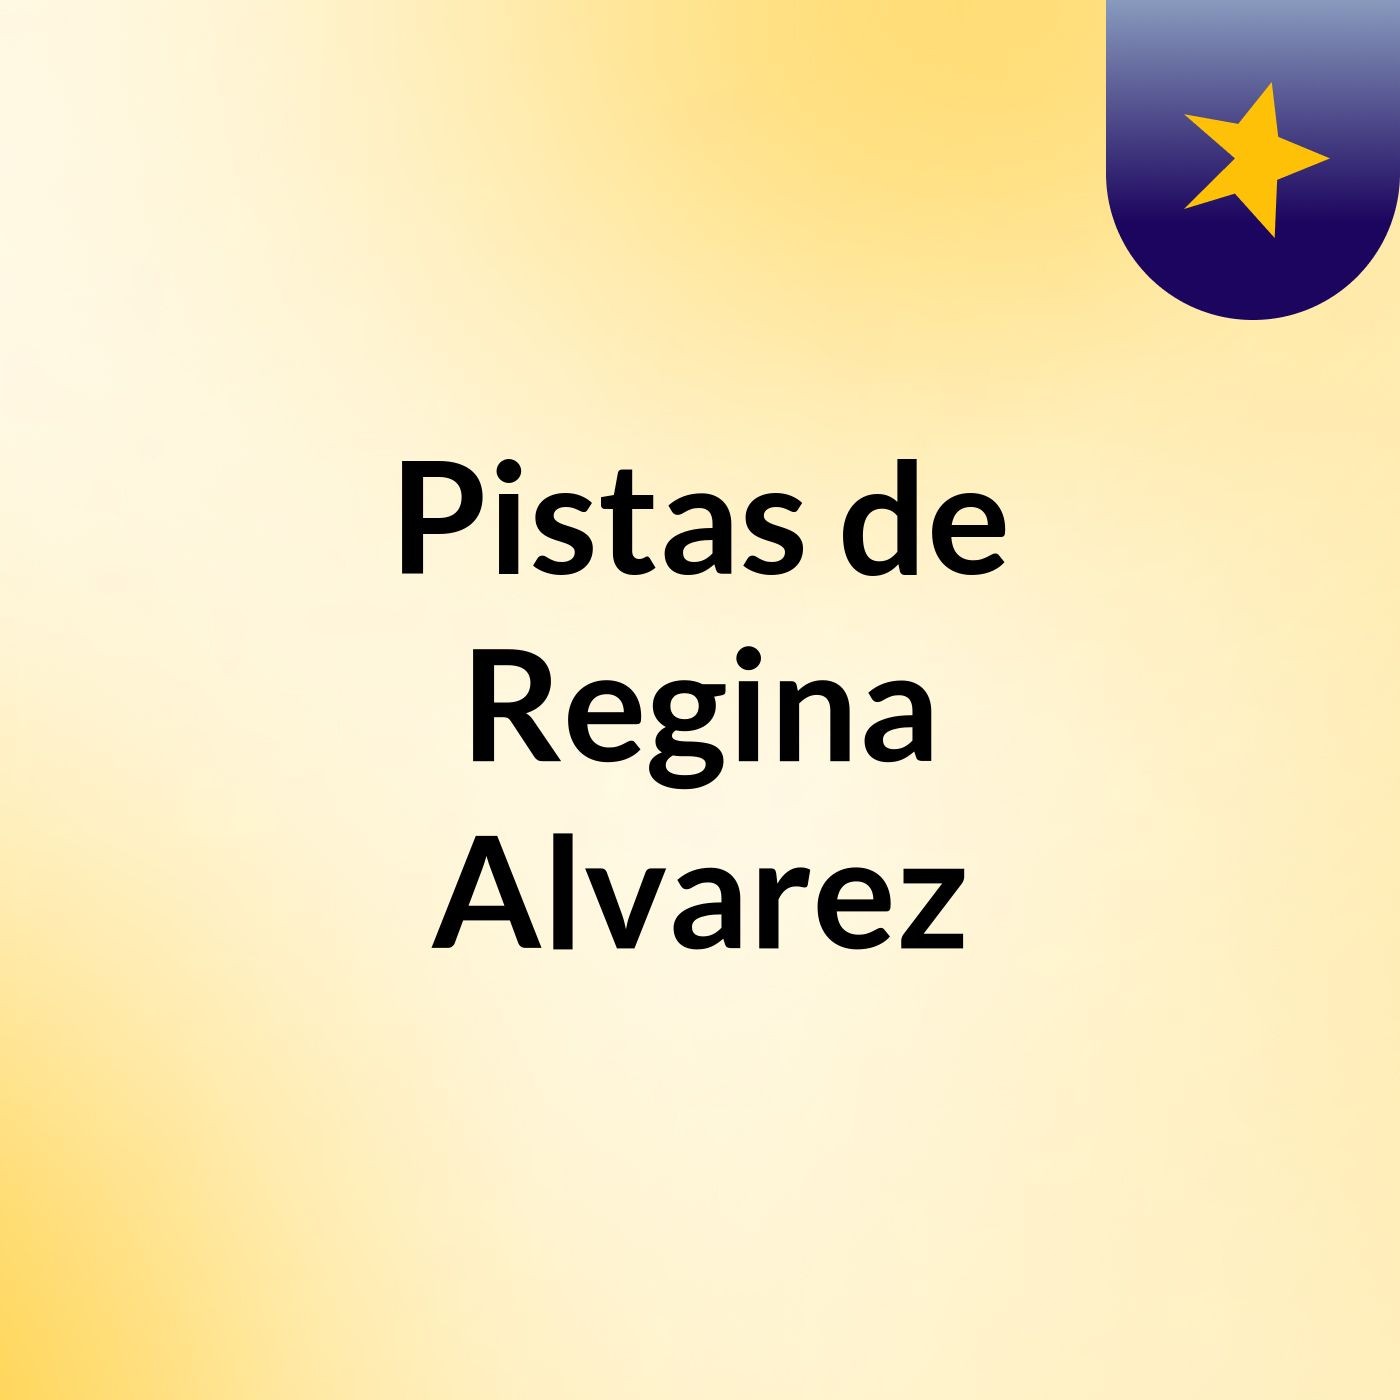 Pistas de Regina Alvarez